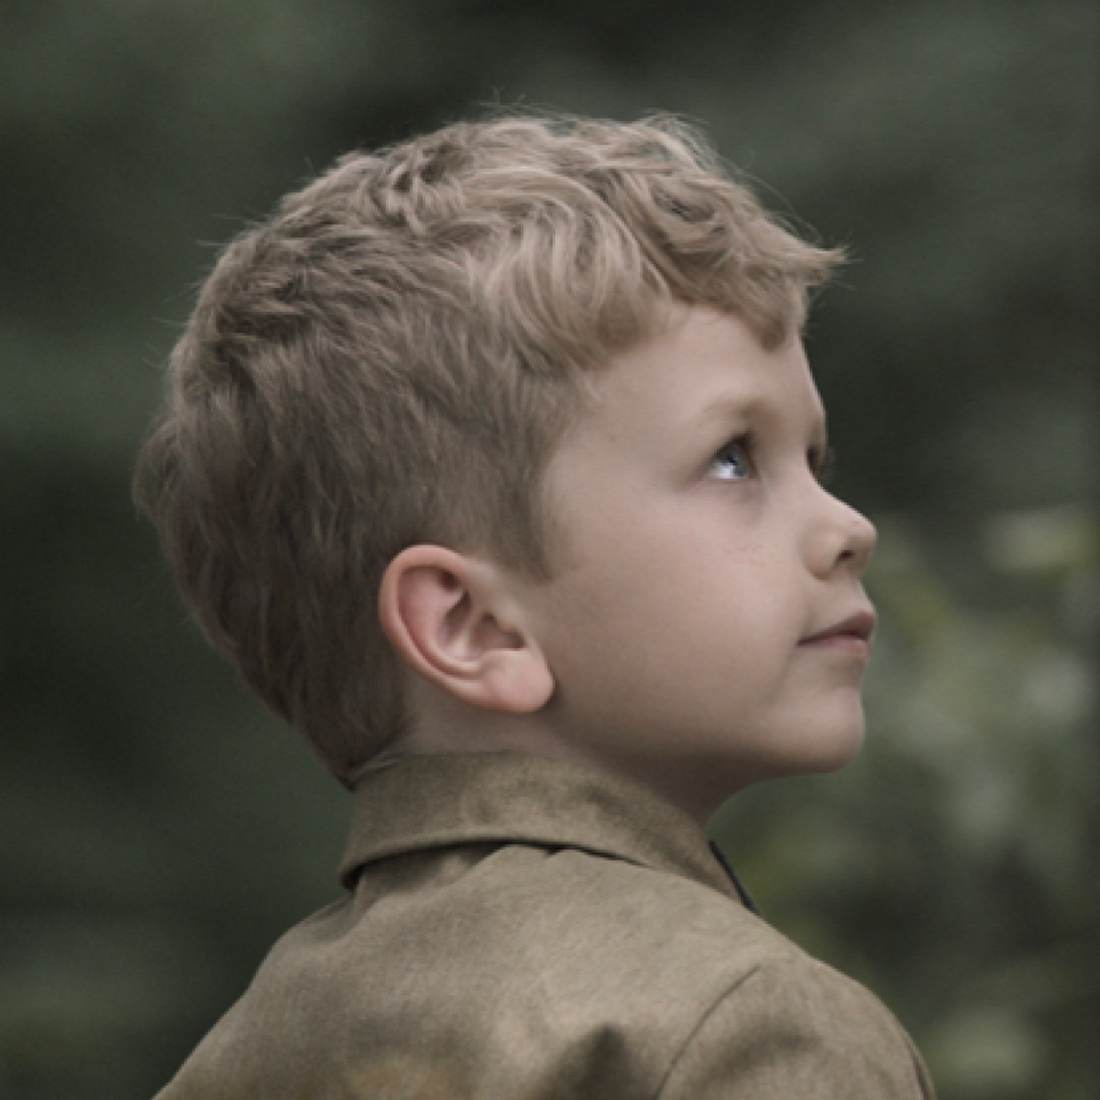 Den Film Soldier Boy kannst du auf Amazon Prime streamen.